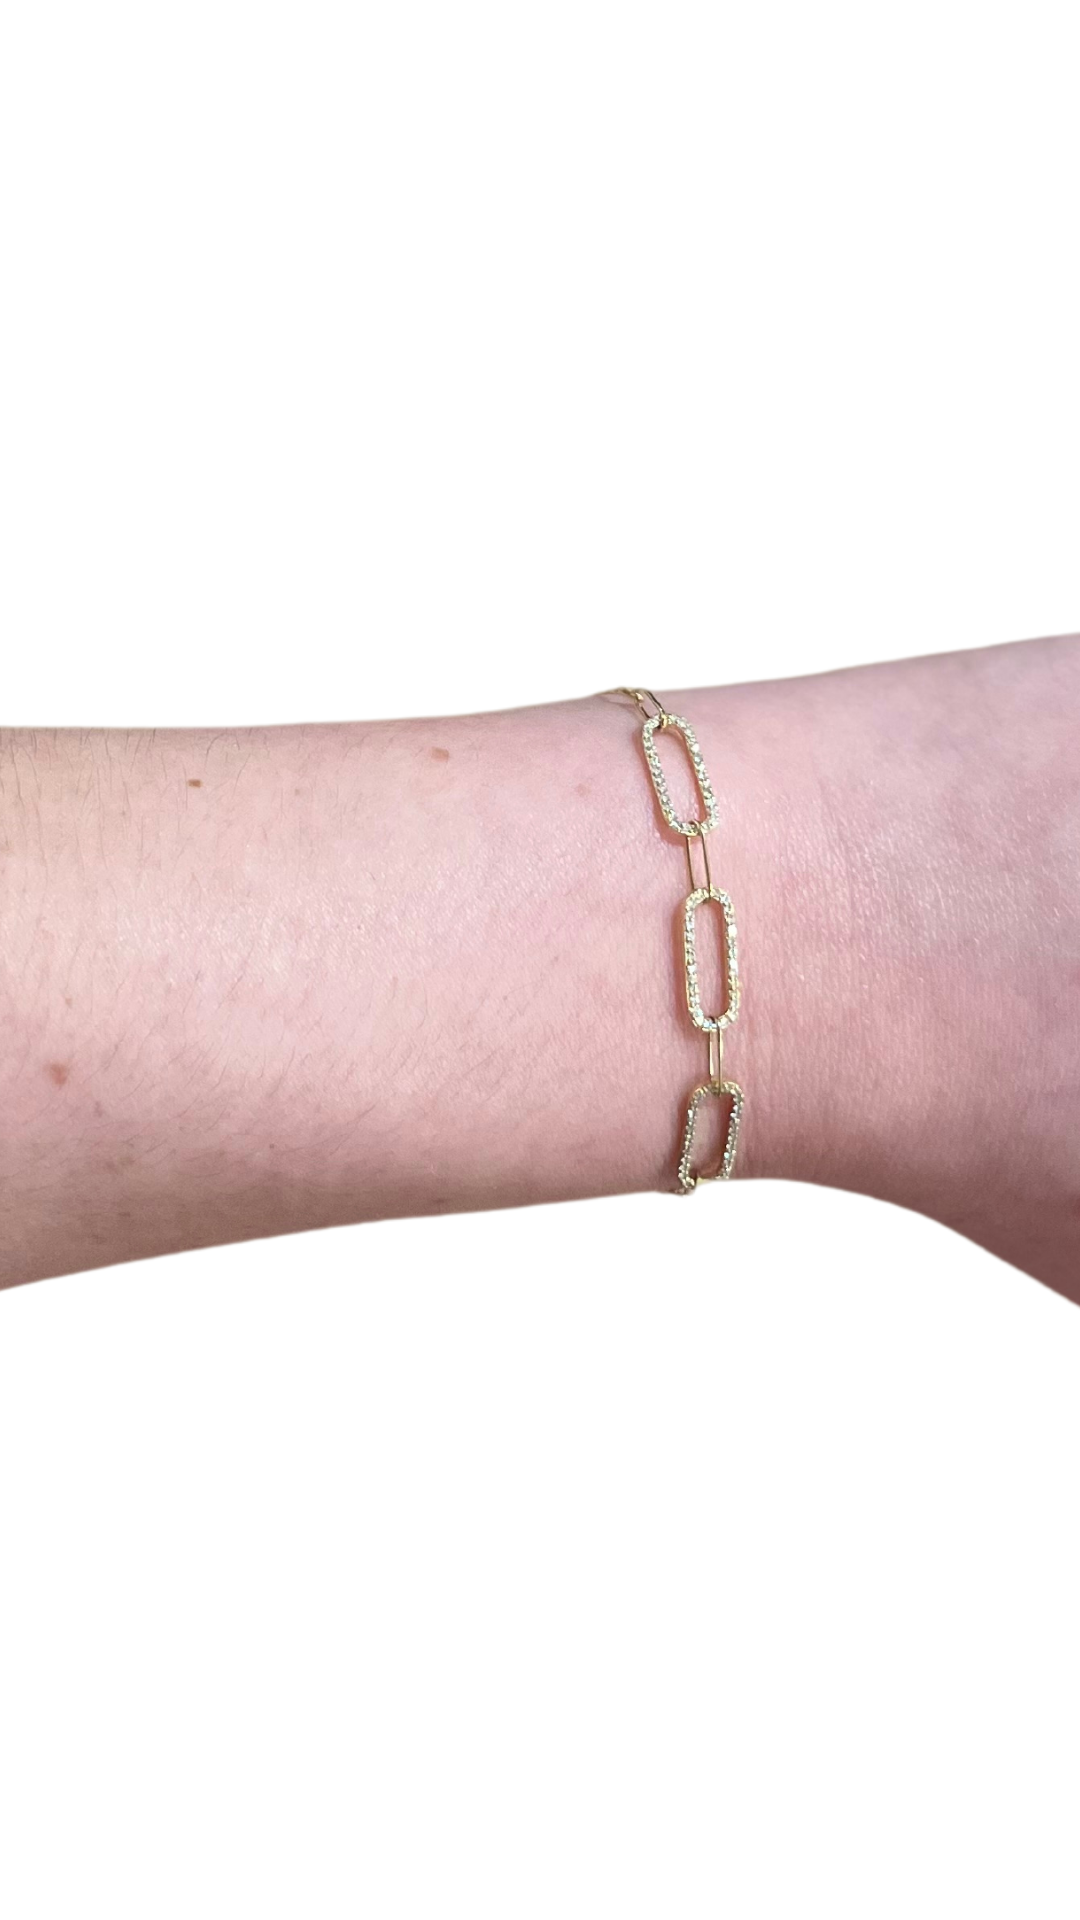 18KY Chain Bracelet